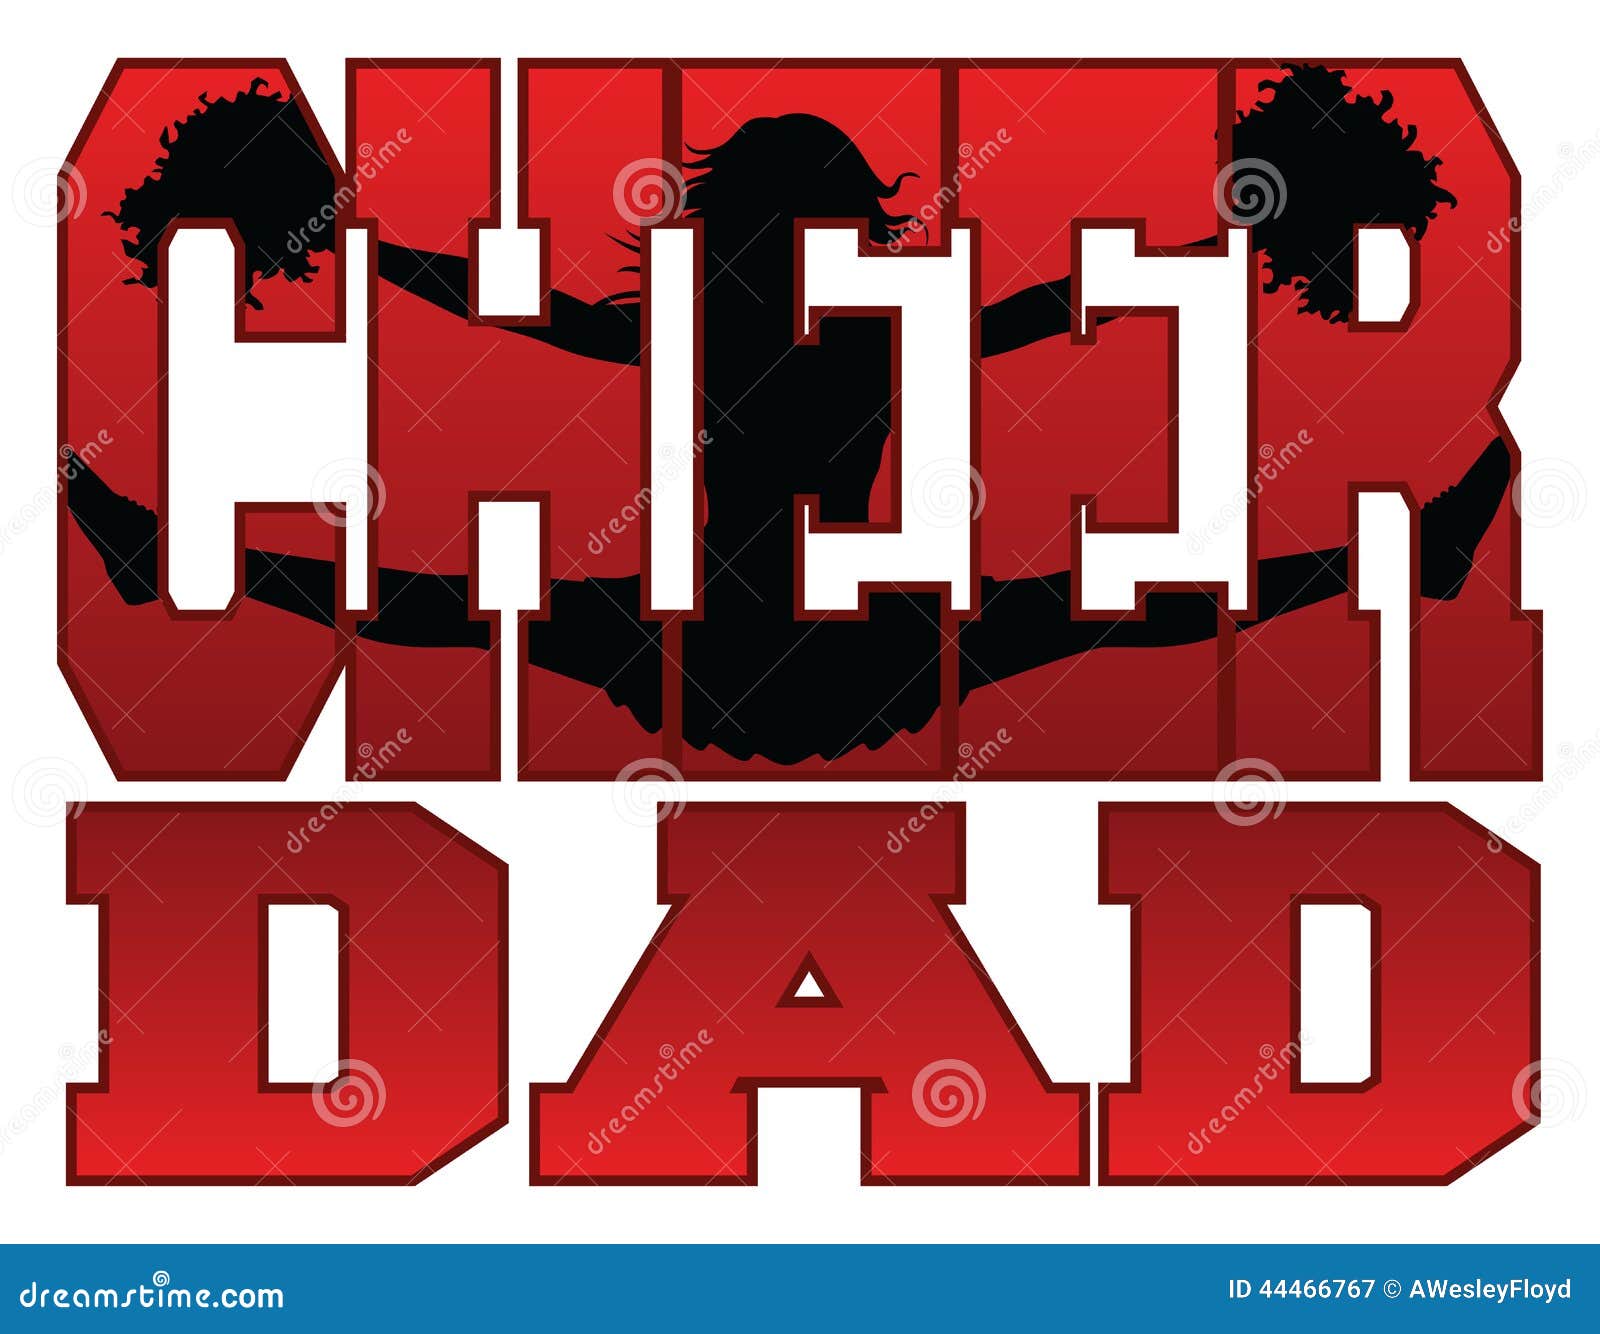 cheer dad